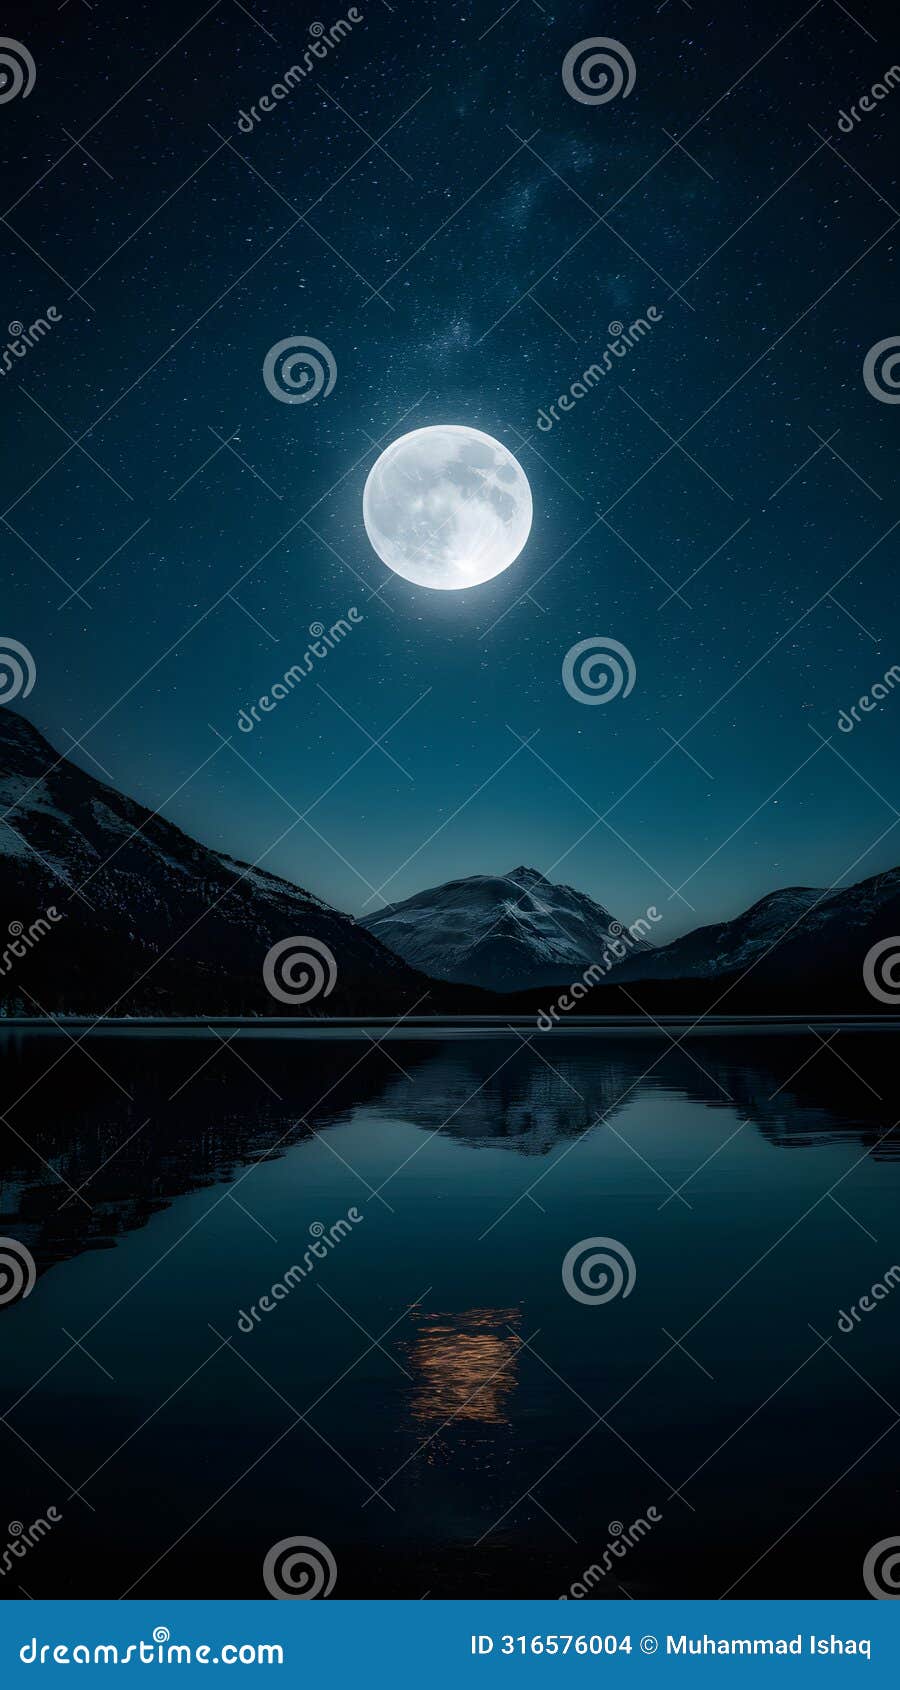 moonlight reveals natures beauty in the dark sky